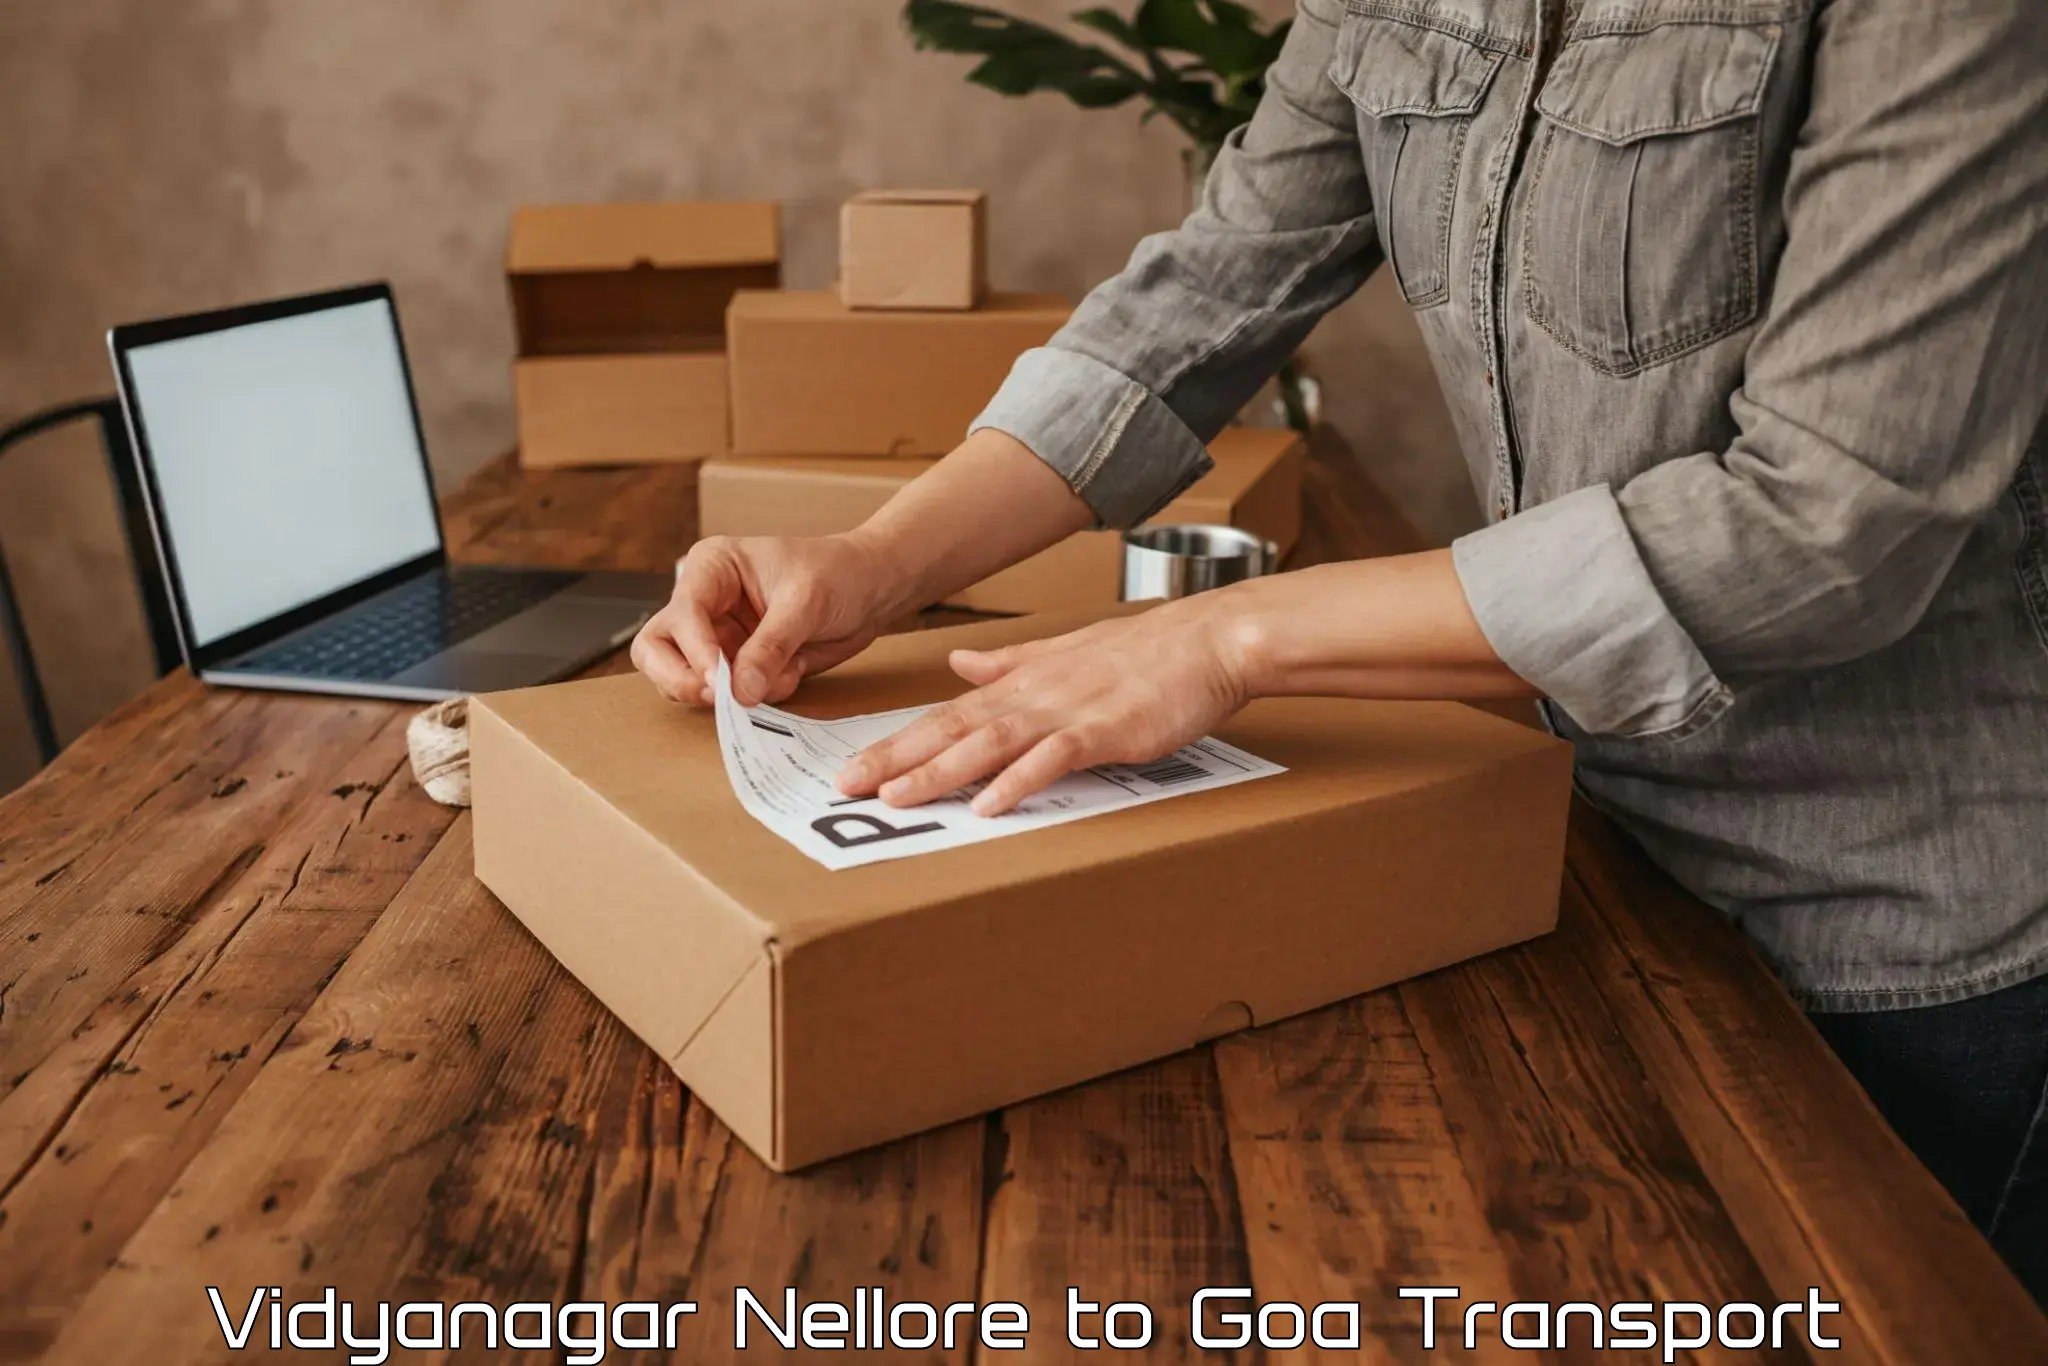 Online transport service Vidyanagar Nellore to IIT Goa